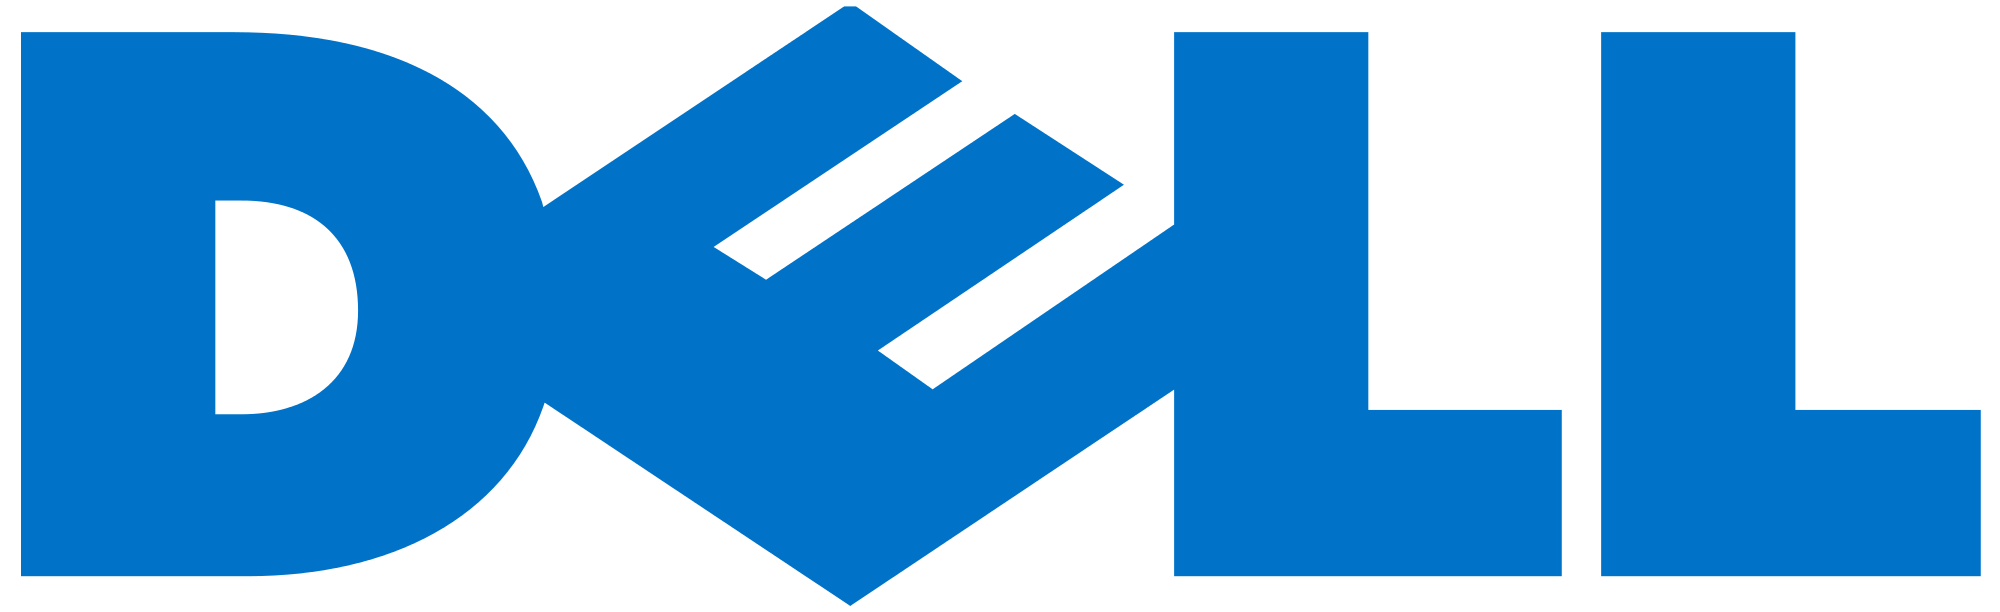 Logo společnosti Dell